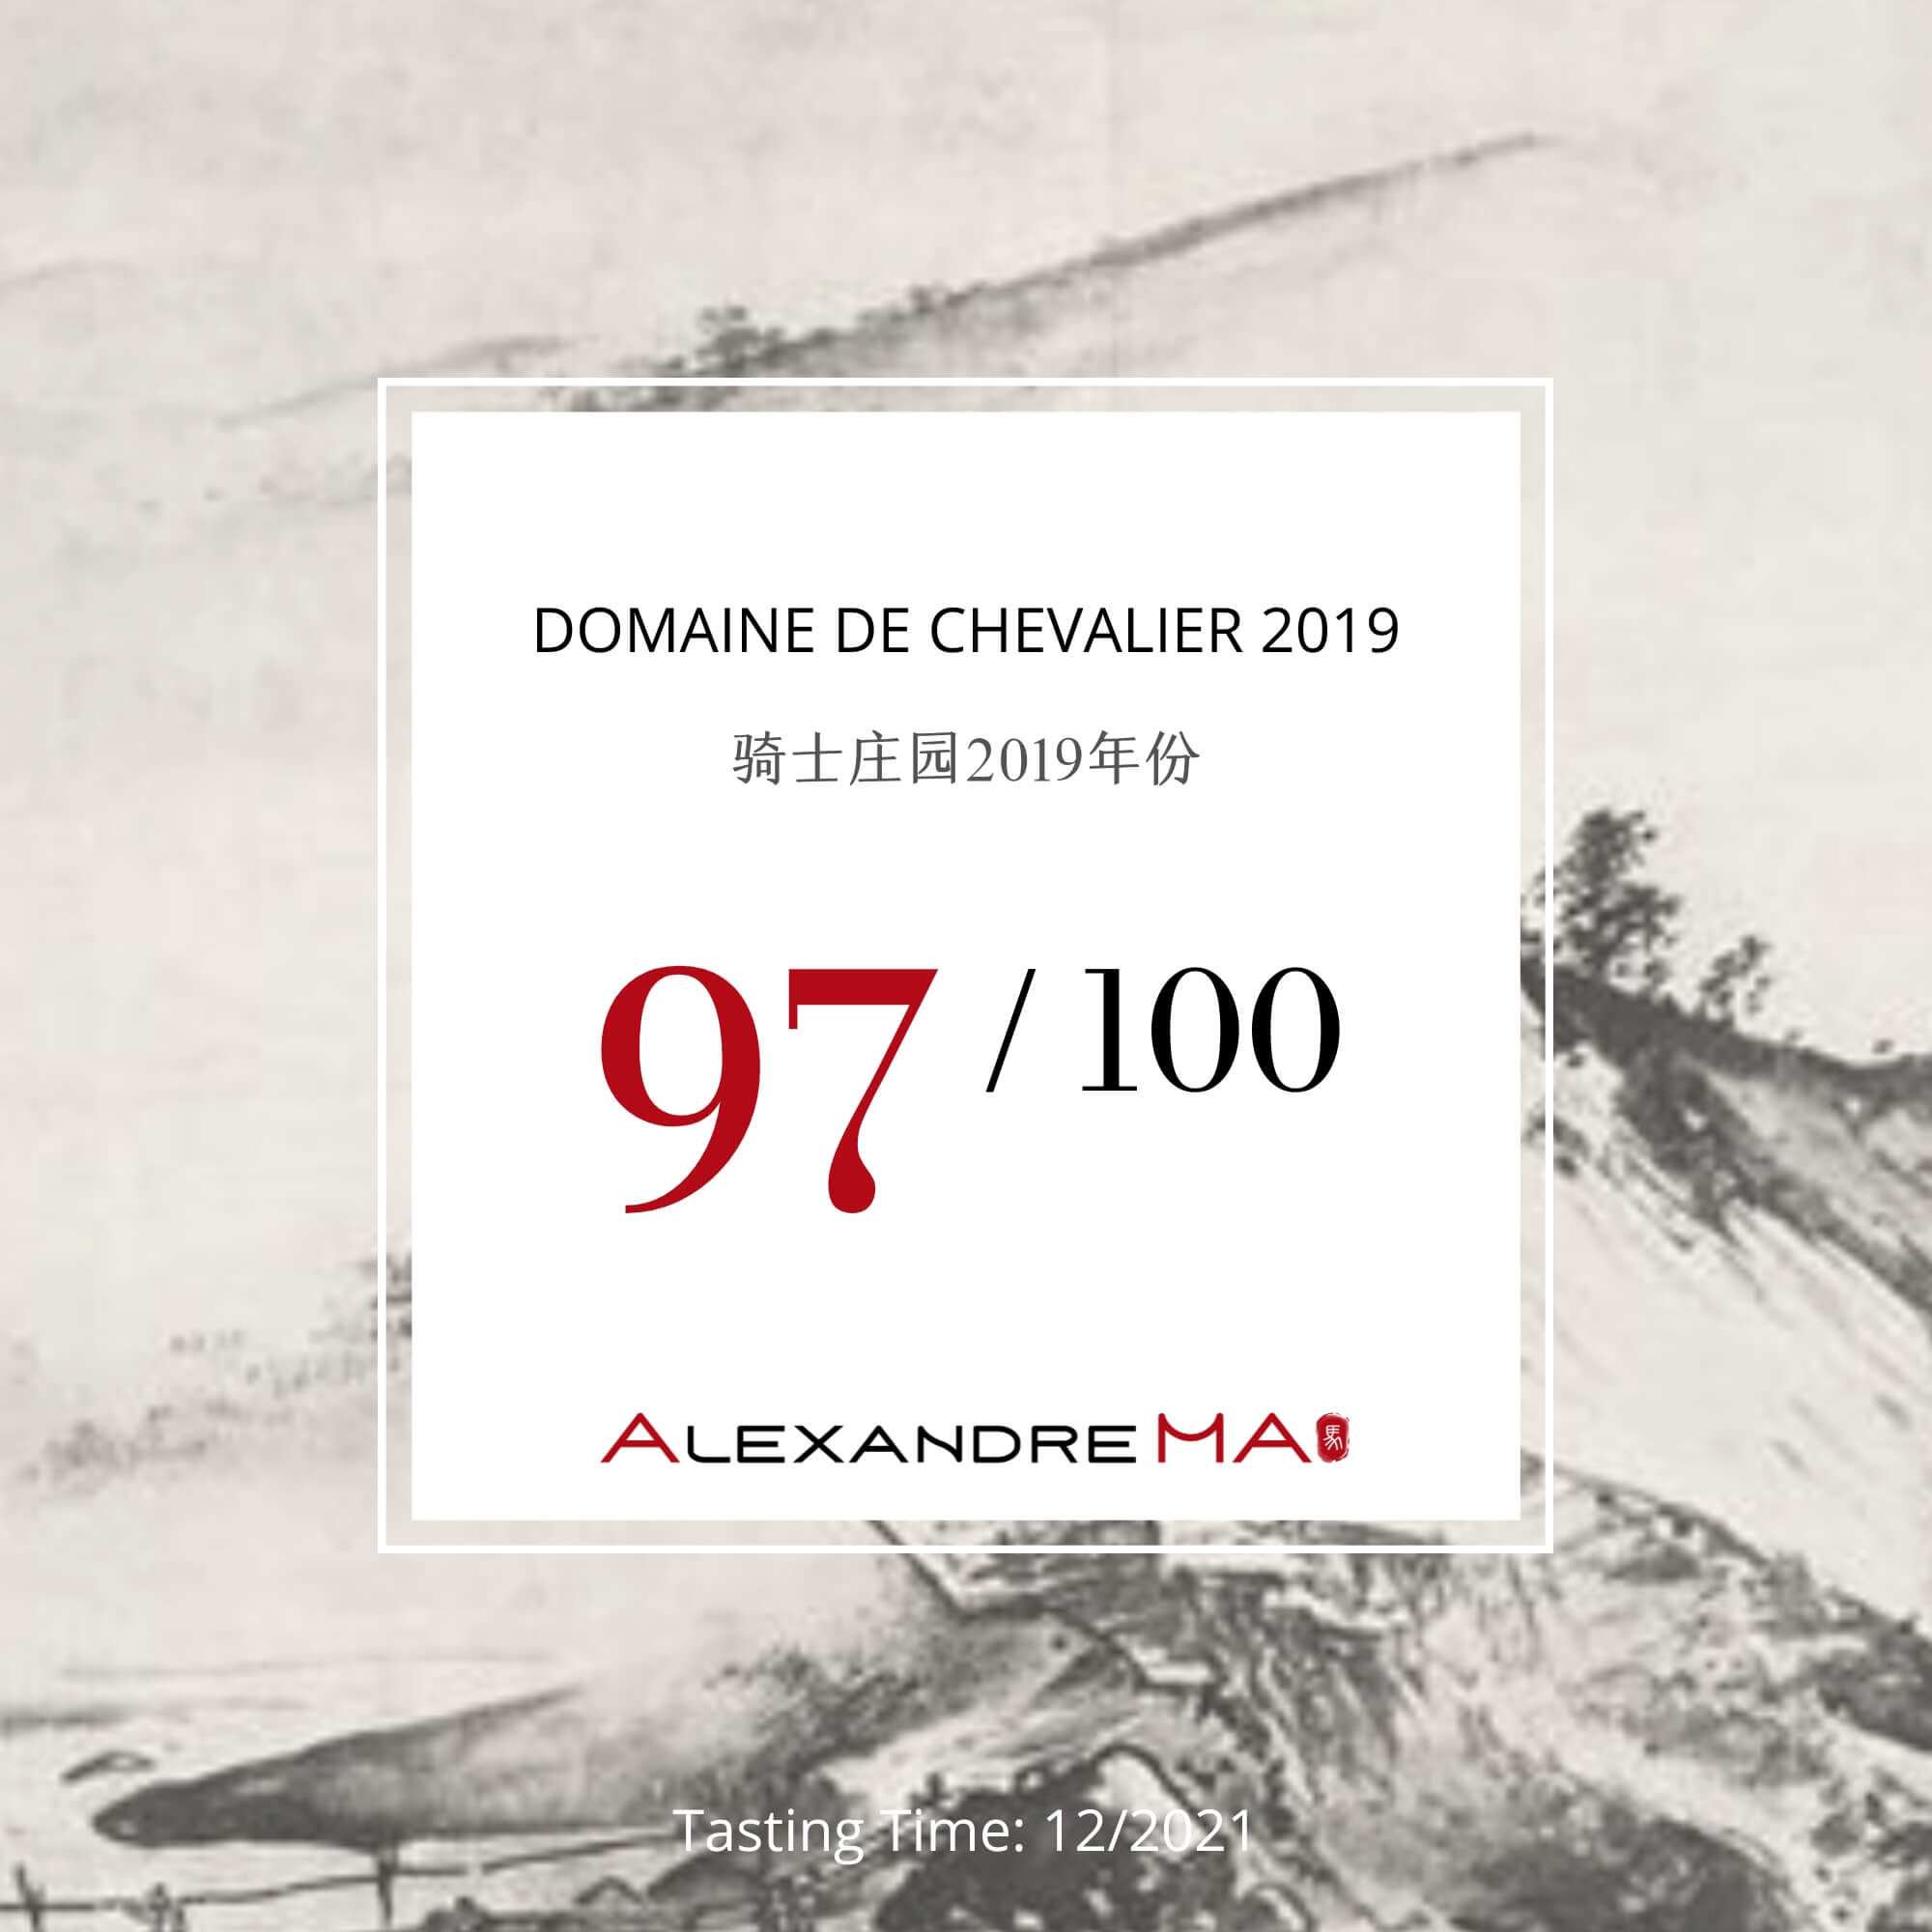 Domaine de Chevalier 2019 - Alexandre MA